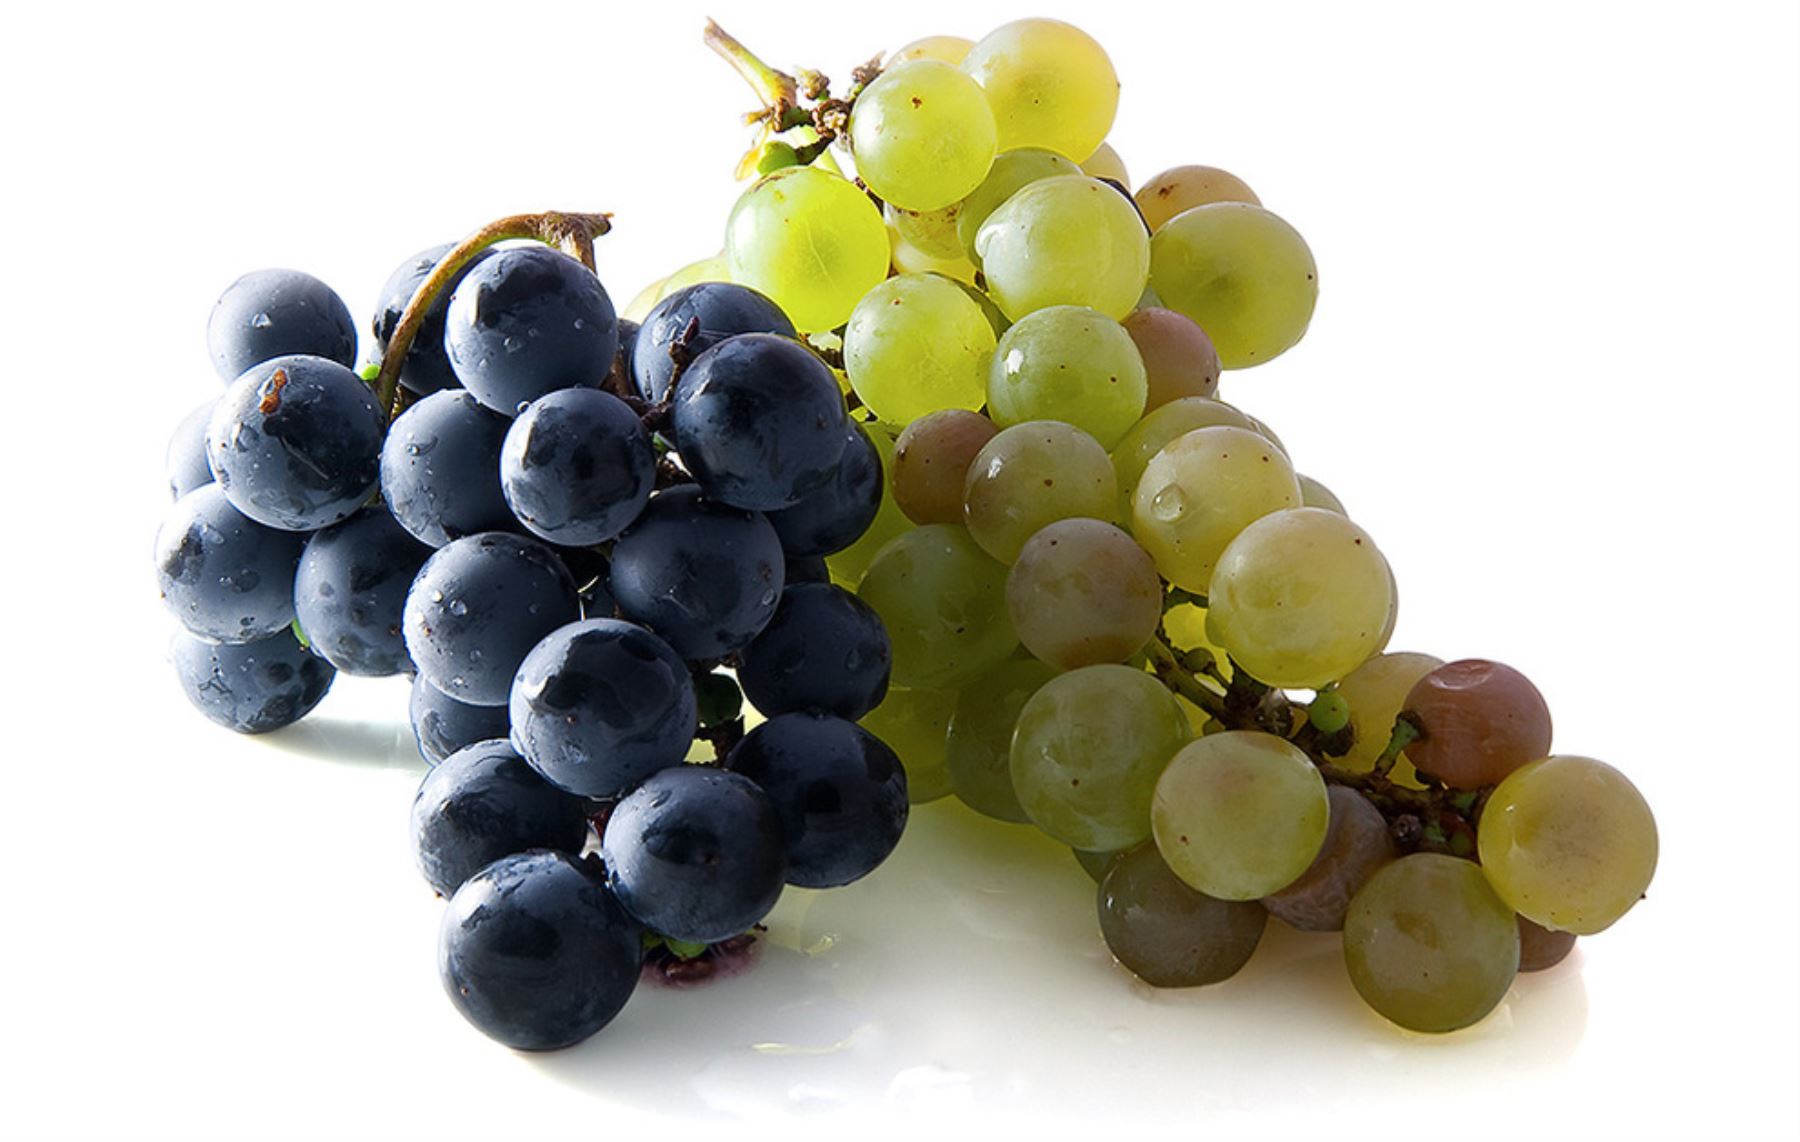 La uva es considerada un superalimento por su alto valor nutricional en la que destacan las vitaminas C y K, minerales como el hierro, magnesio y calcio, así como fibra y proteína vegetal. Su aporte calórico es de 67 Kcal por cada 100 gramos.  INTERNET/Medios